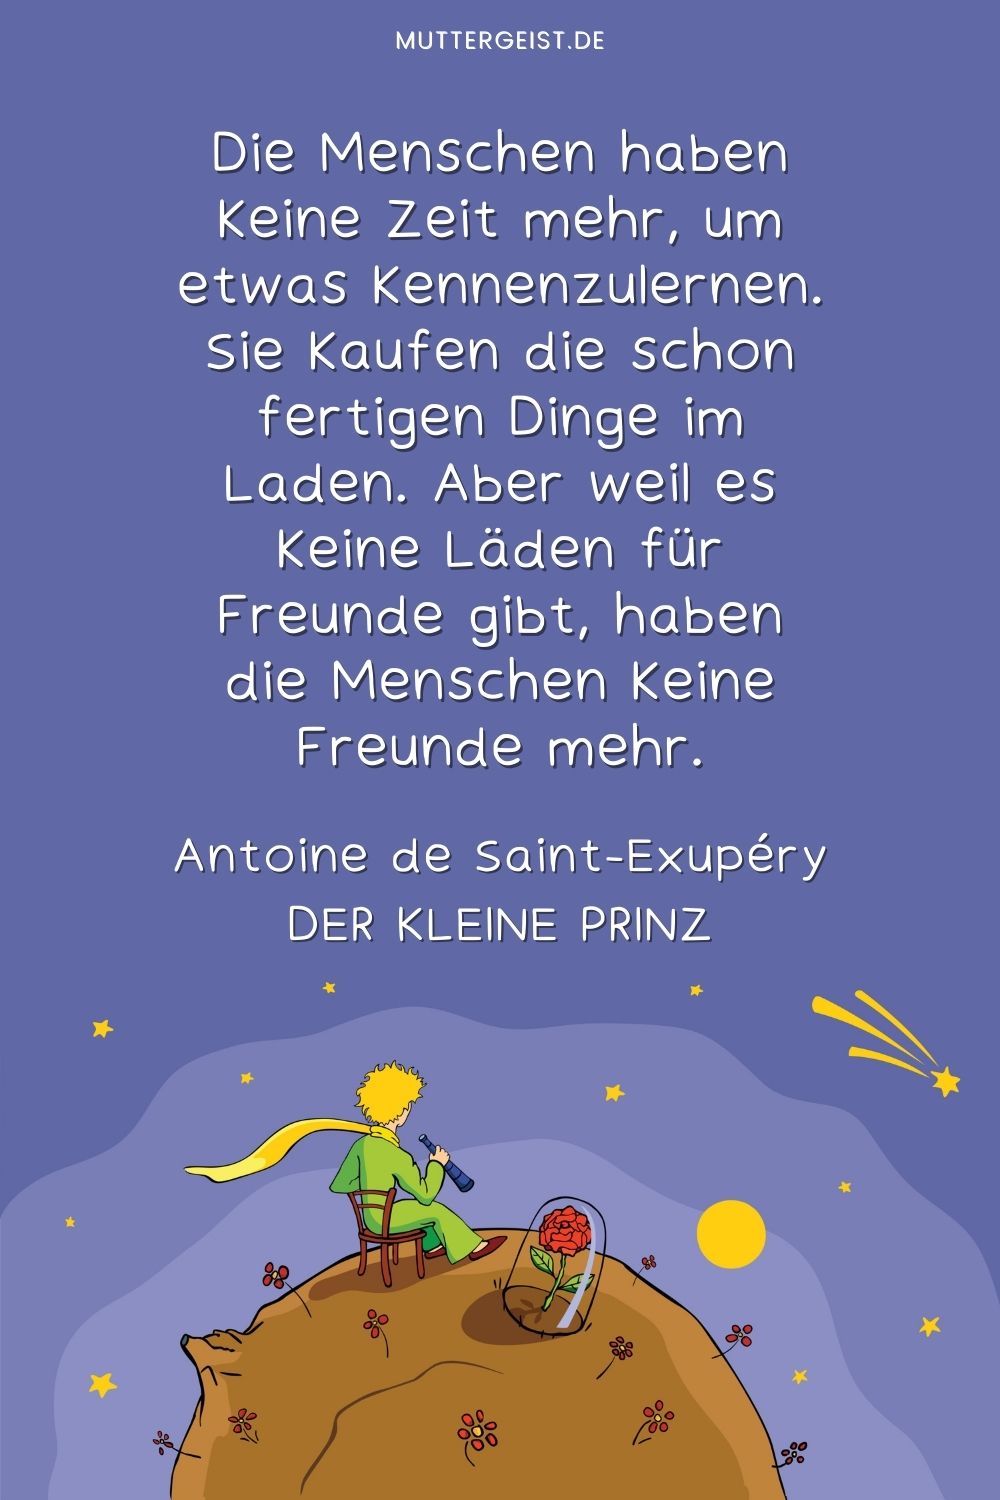 Zitat aus dem Buch Der kleine Prinz über Freundschaft